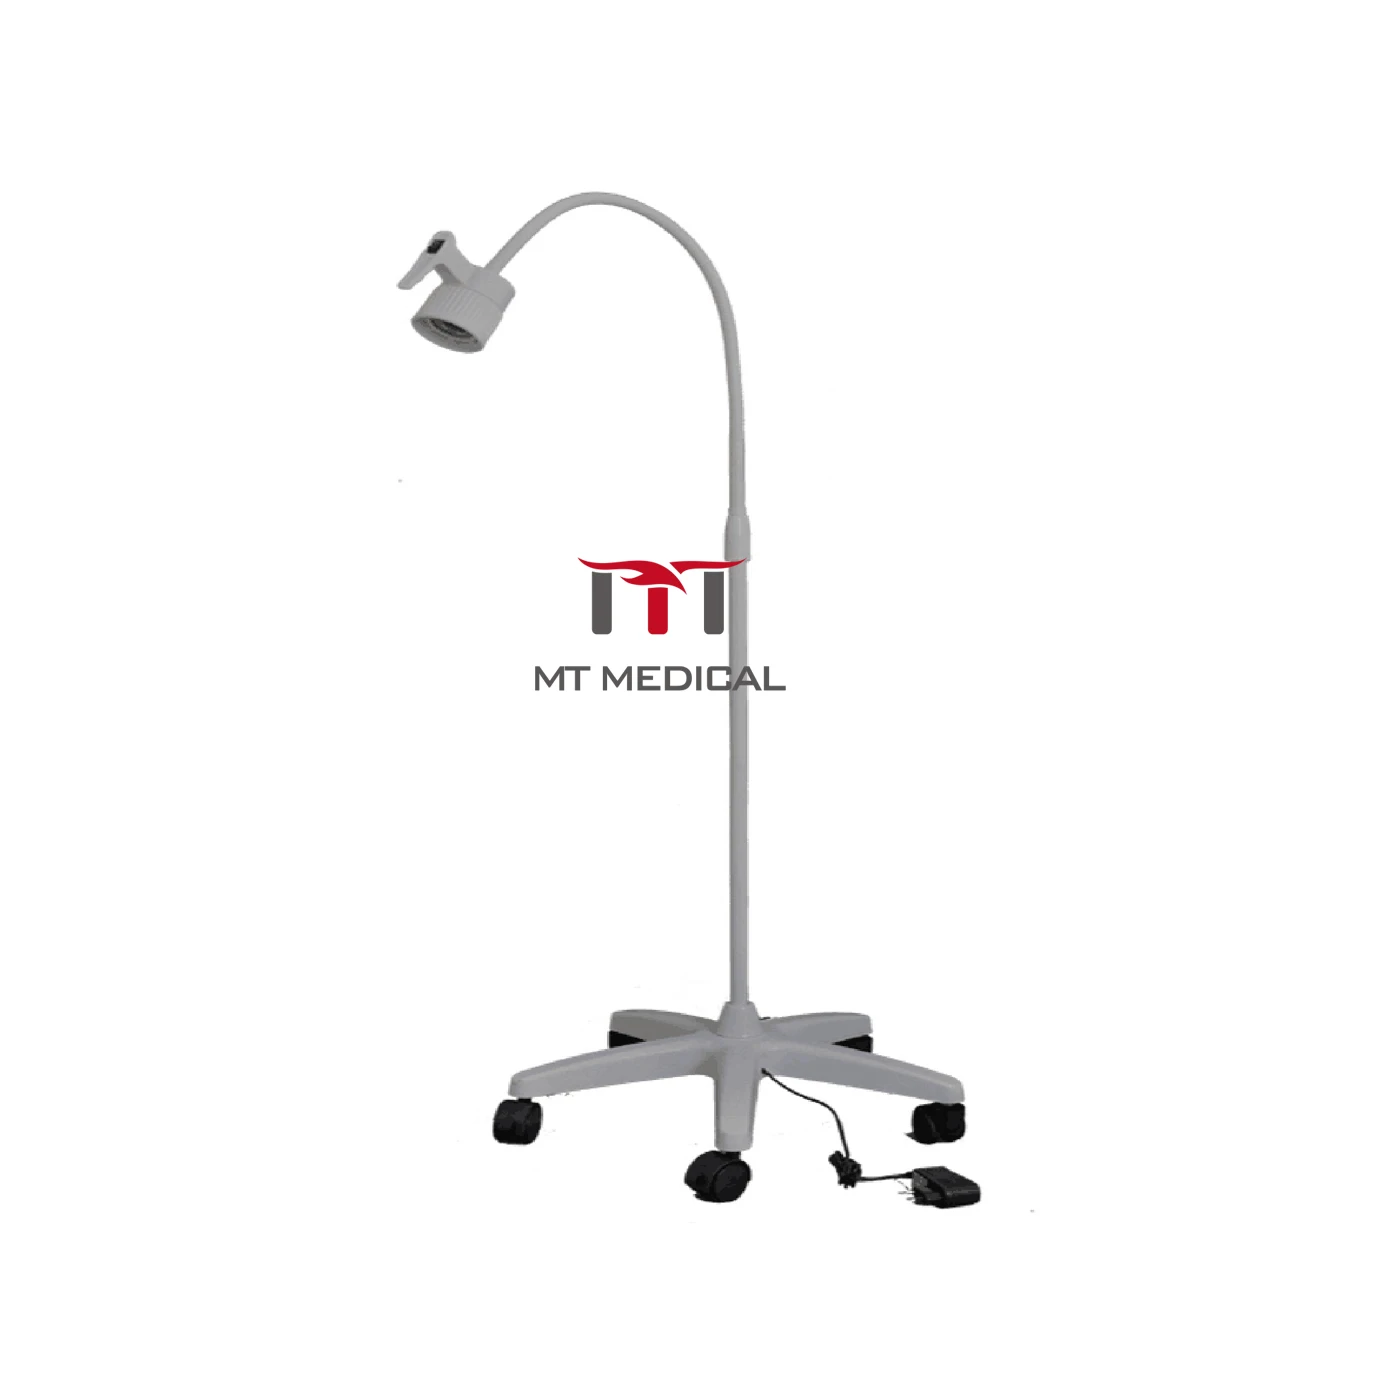 

MT медицинская Высококачественная портативная Мобильная лампа для осмотра с сертификатом CE, хирургическая операция светильник